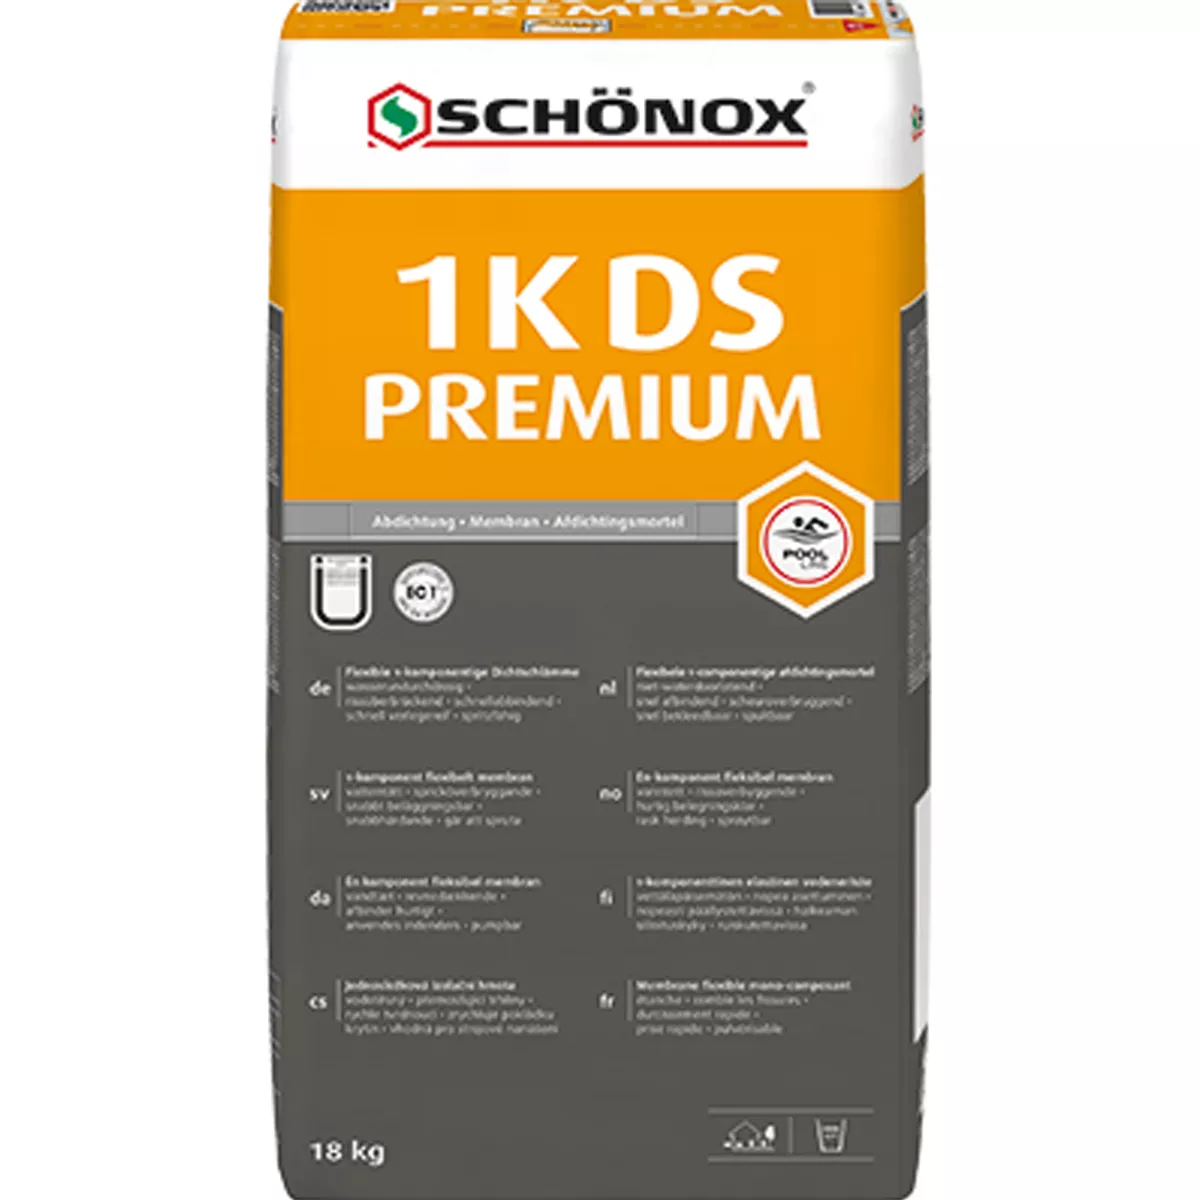 Schönox Abdichtung 1K-DS PREMIUM 18 Kg